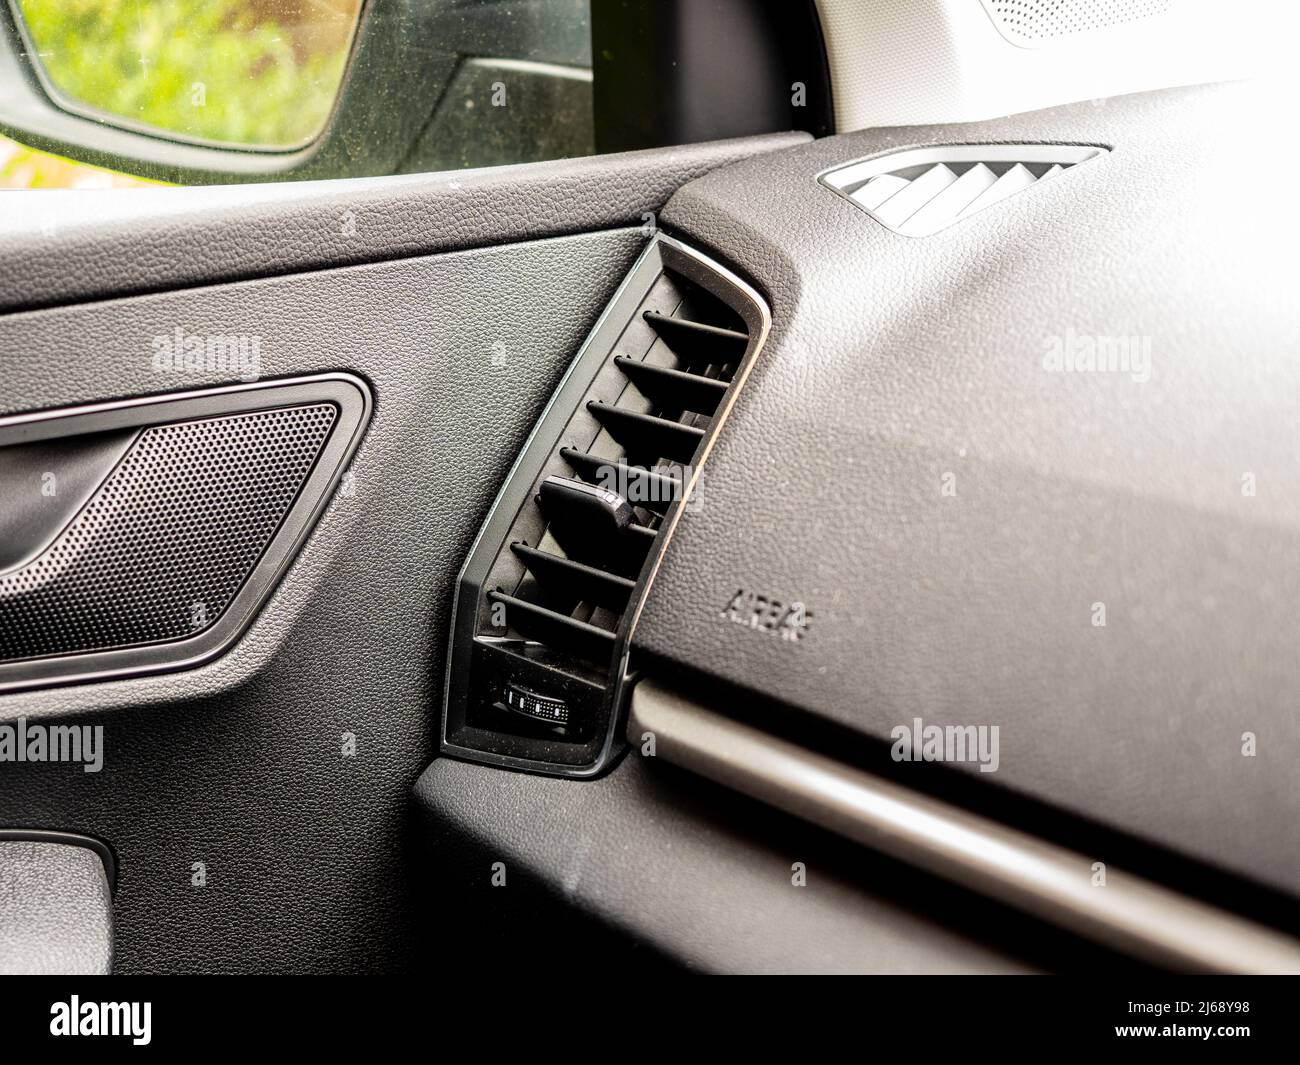 Selezionato Focus Adustable aria condizionata , ventilazione e uscita aria fresca in auto moderne interni Foto Stock